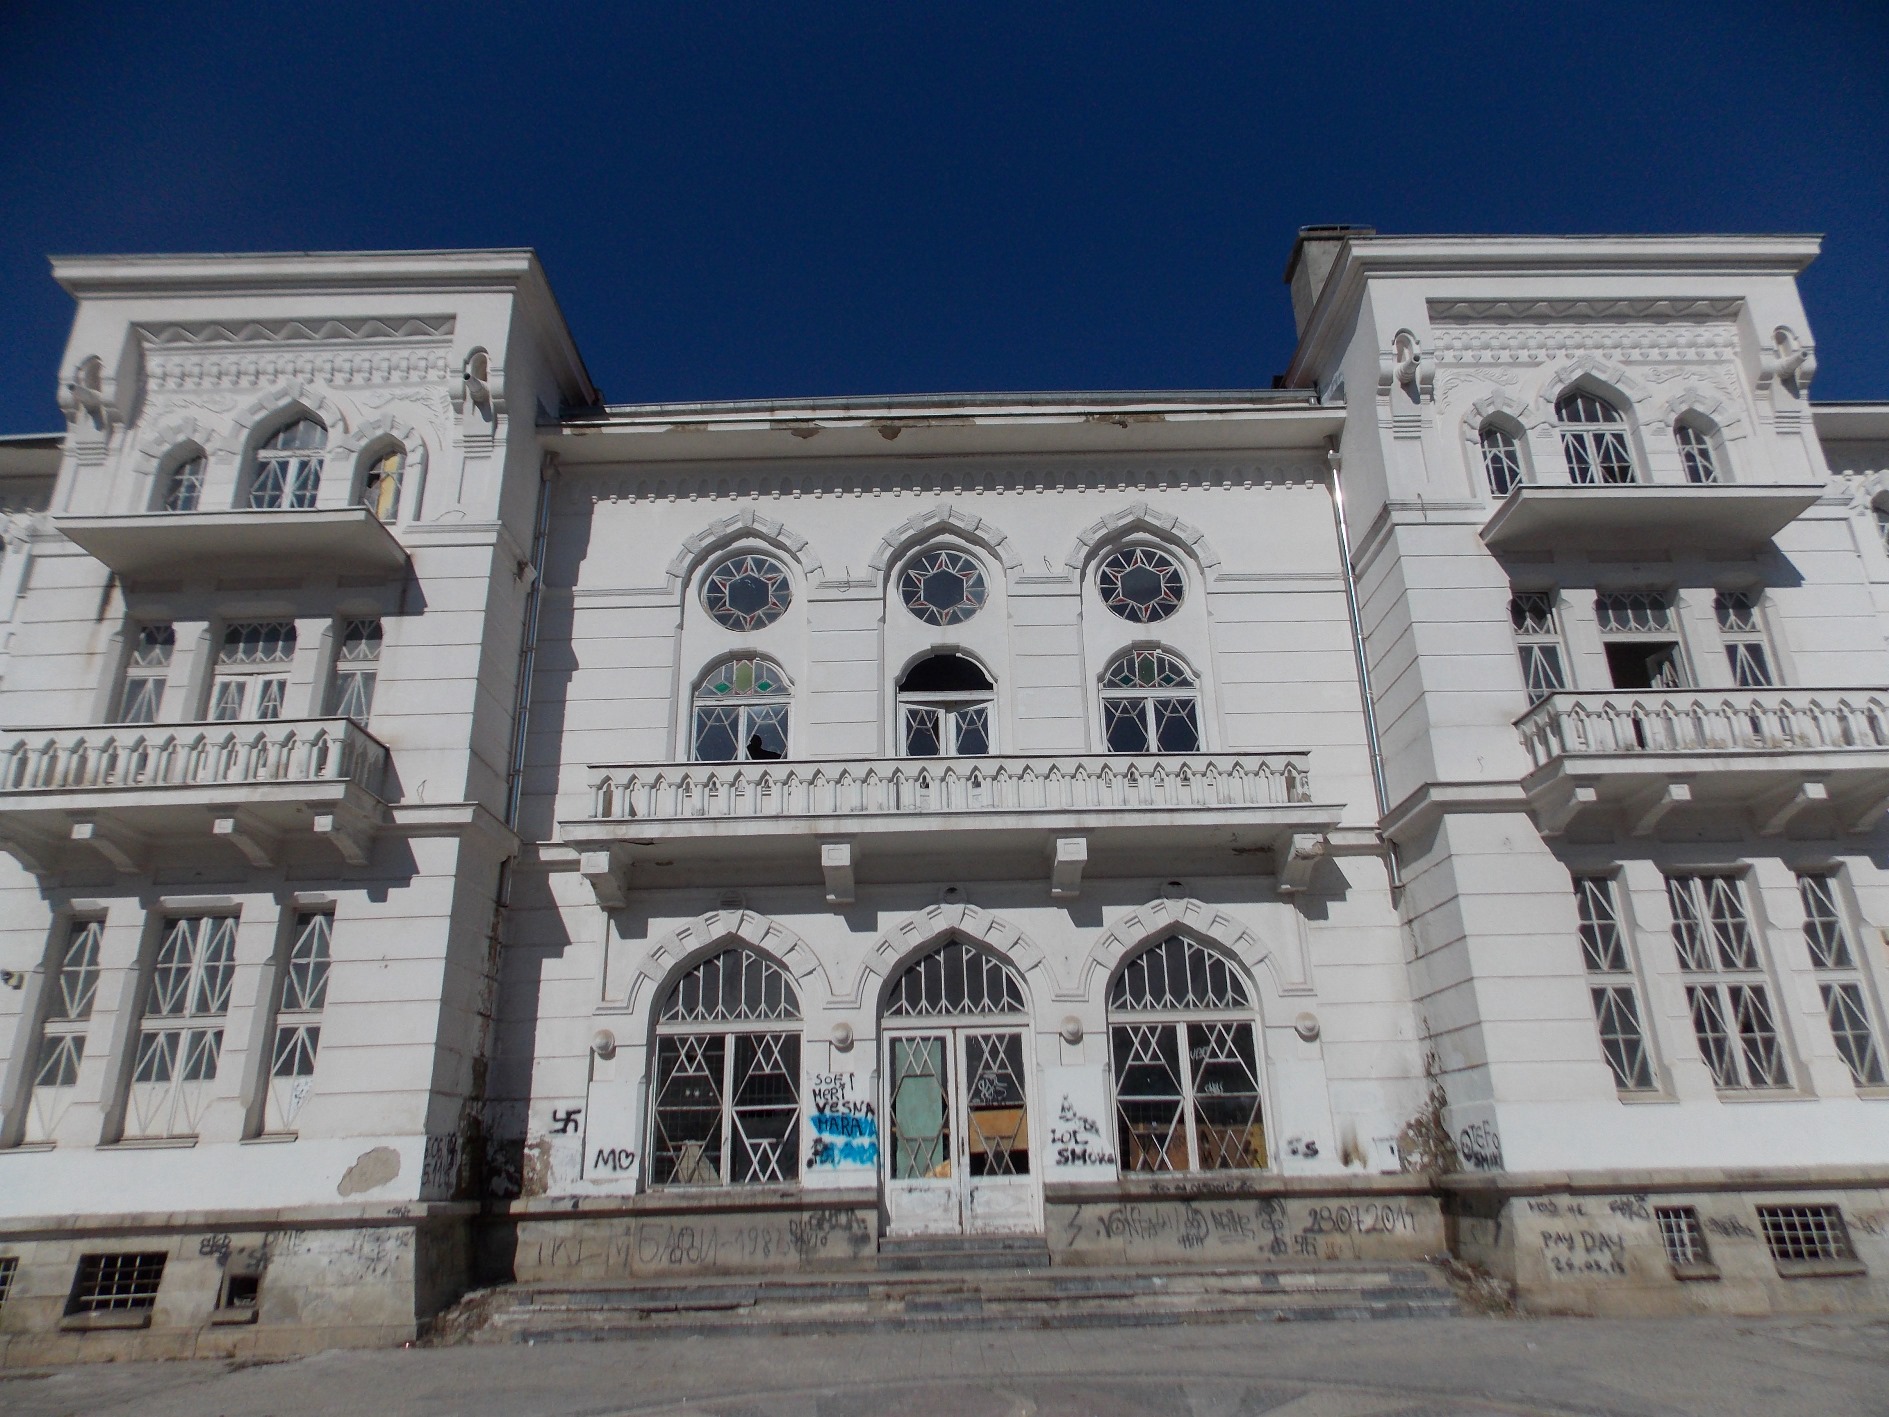 Државата се обиде да се ослободи од Официерскиот дом и во јануари годинава го огласи на продажба по почетна цена од 930.000 евра. Ова ја дигна Битола на нозе, па по протестите власта се откажа од продажбата, а тогашниот премиер Никола Груевски изјави дека објектот ѝ се отстапува на Општина Битола (Фото: СДК.МК)